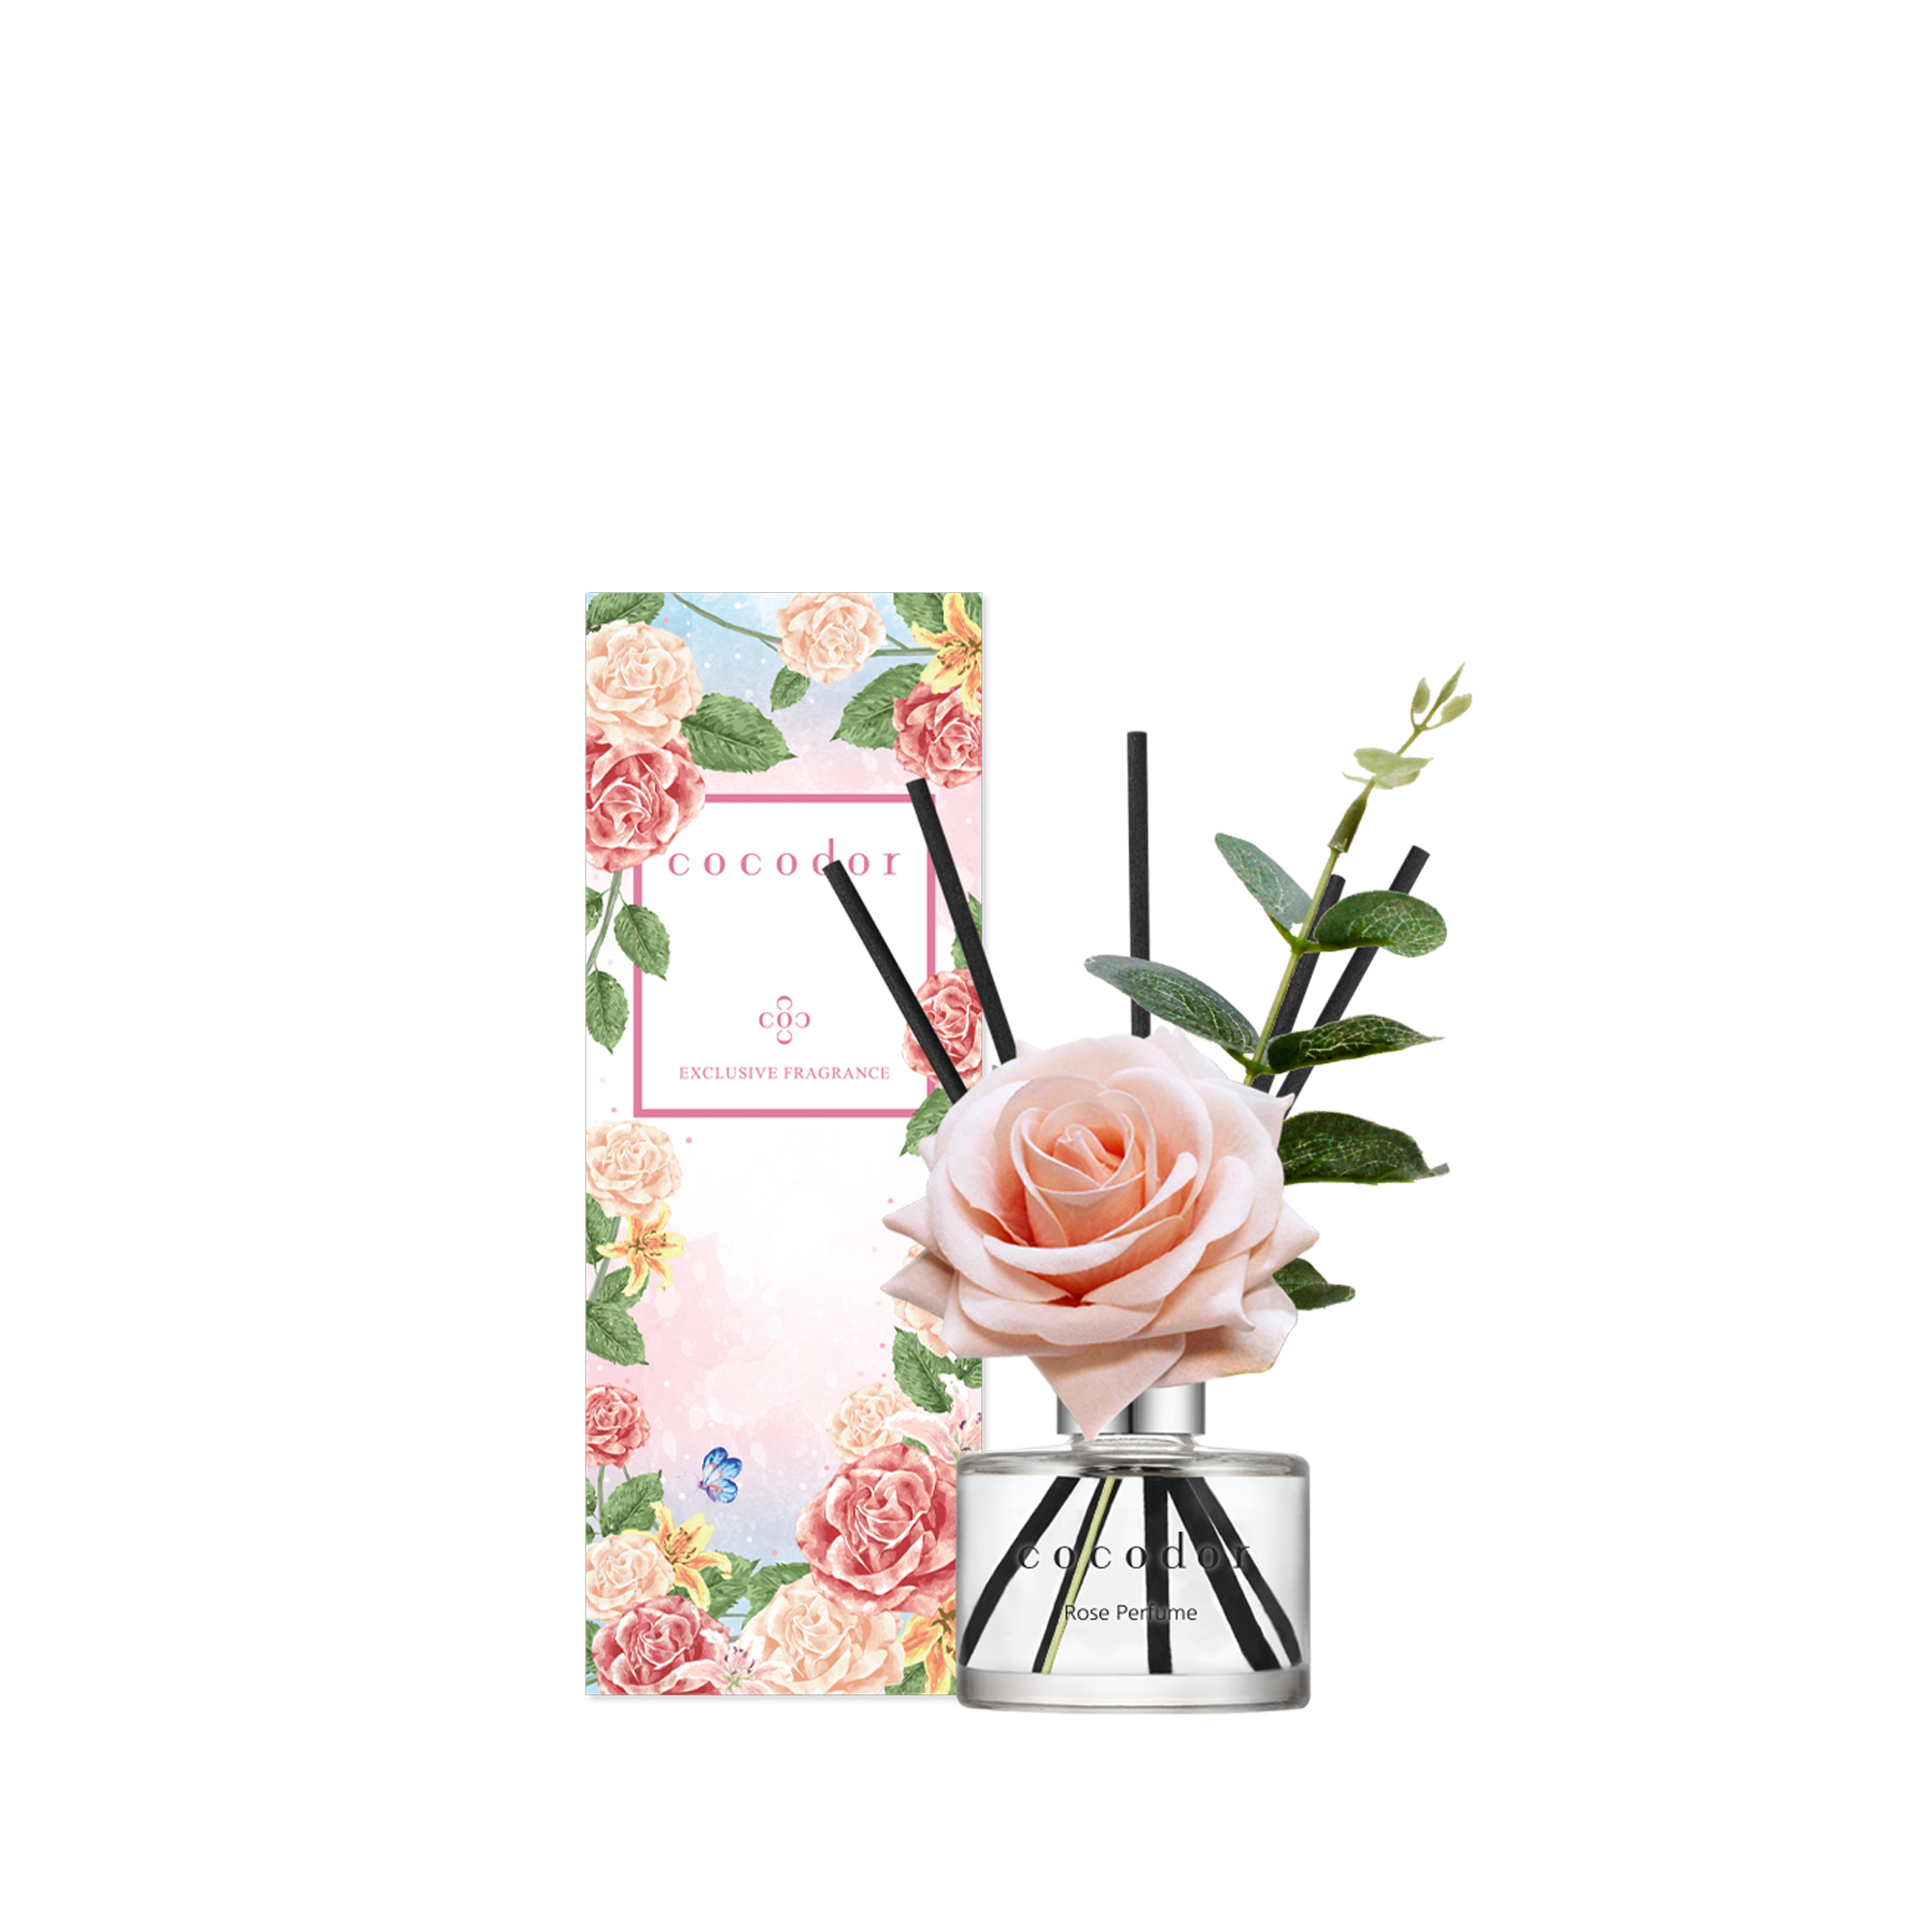 Cocodor diffuseur de rose - 120ml - rose parfum